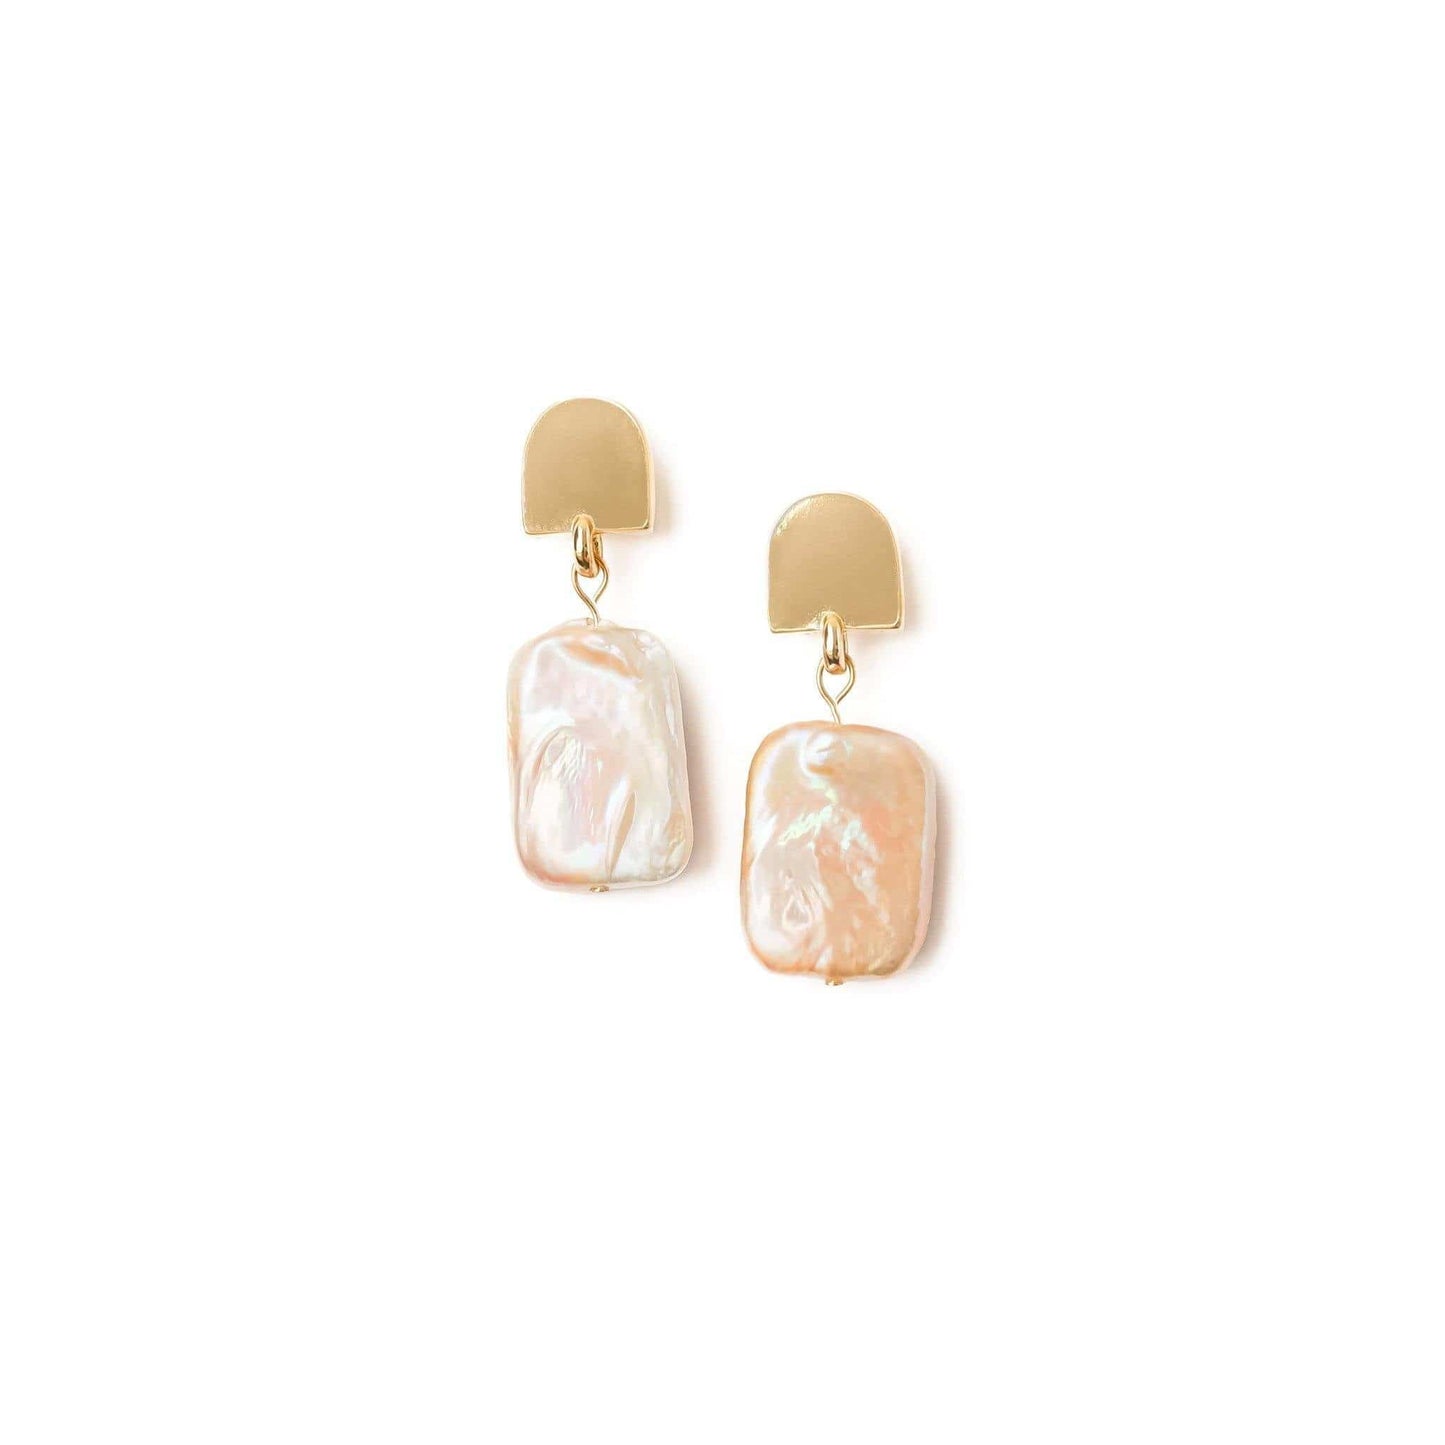 gold dome + peachy pearl earrings - VUE by SEK